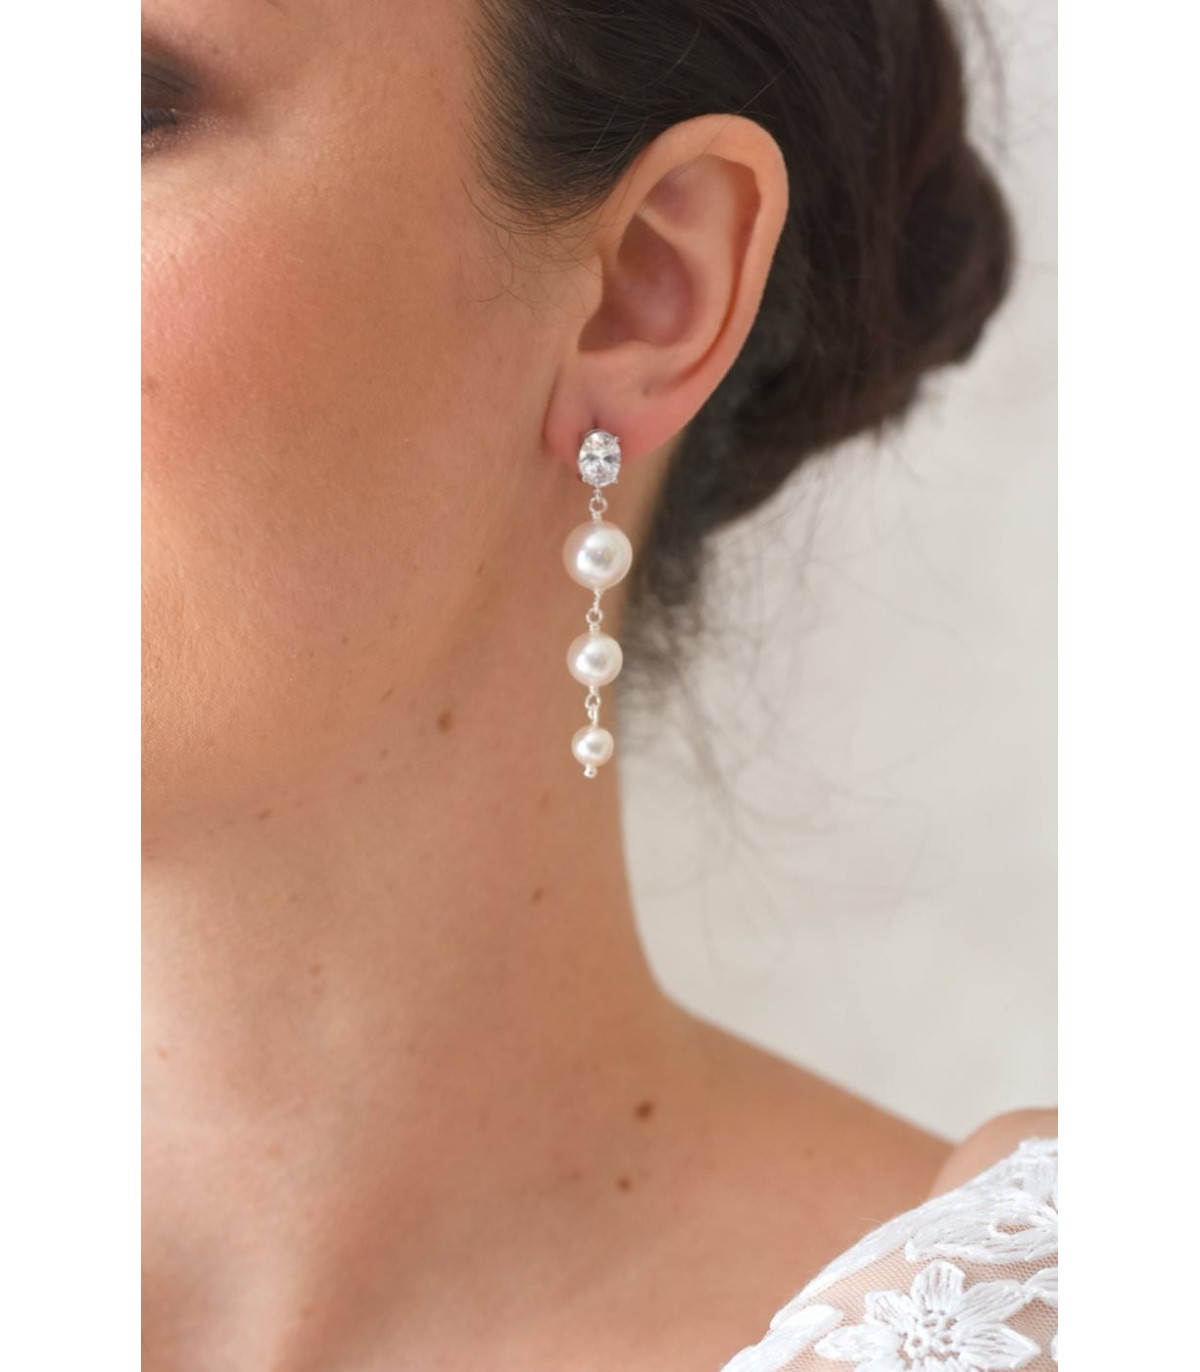 Boucles d'oreilles Chandelier pour la mariée, pendantes et glamour avec des perles nacrées et un fermoir strassé.